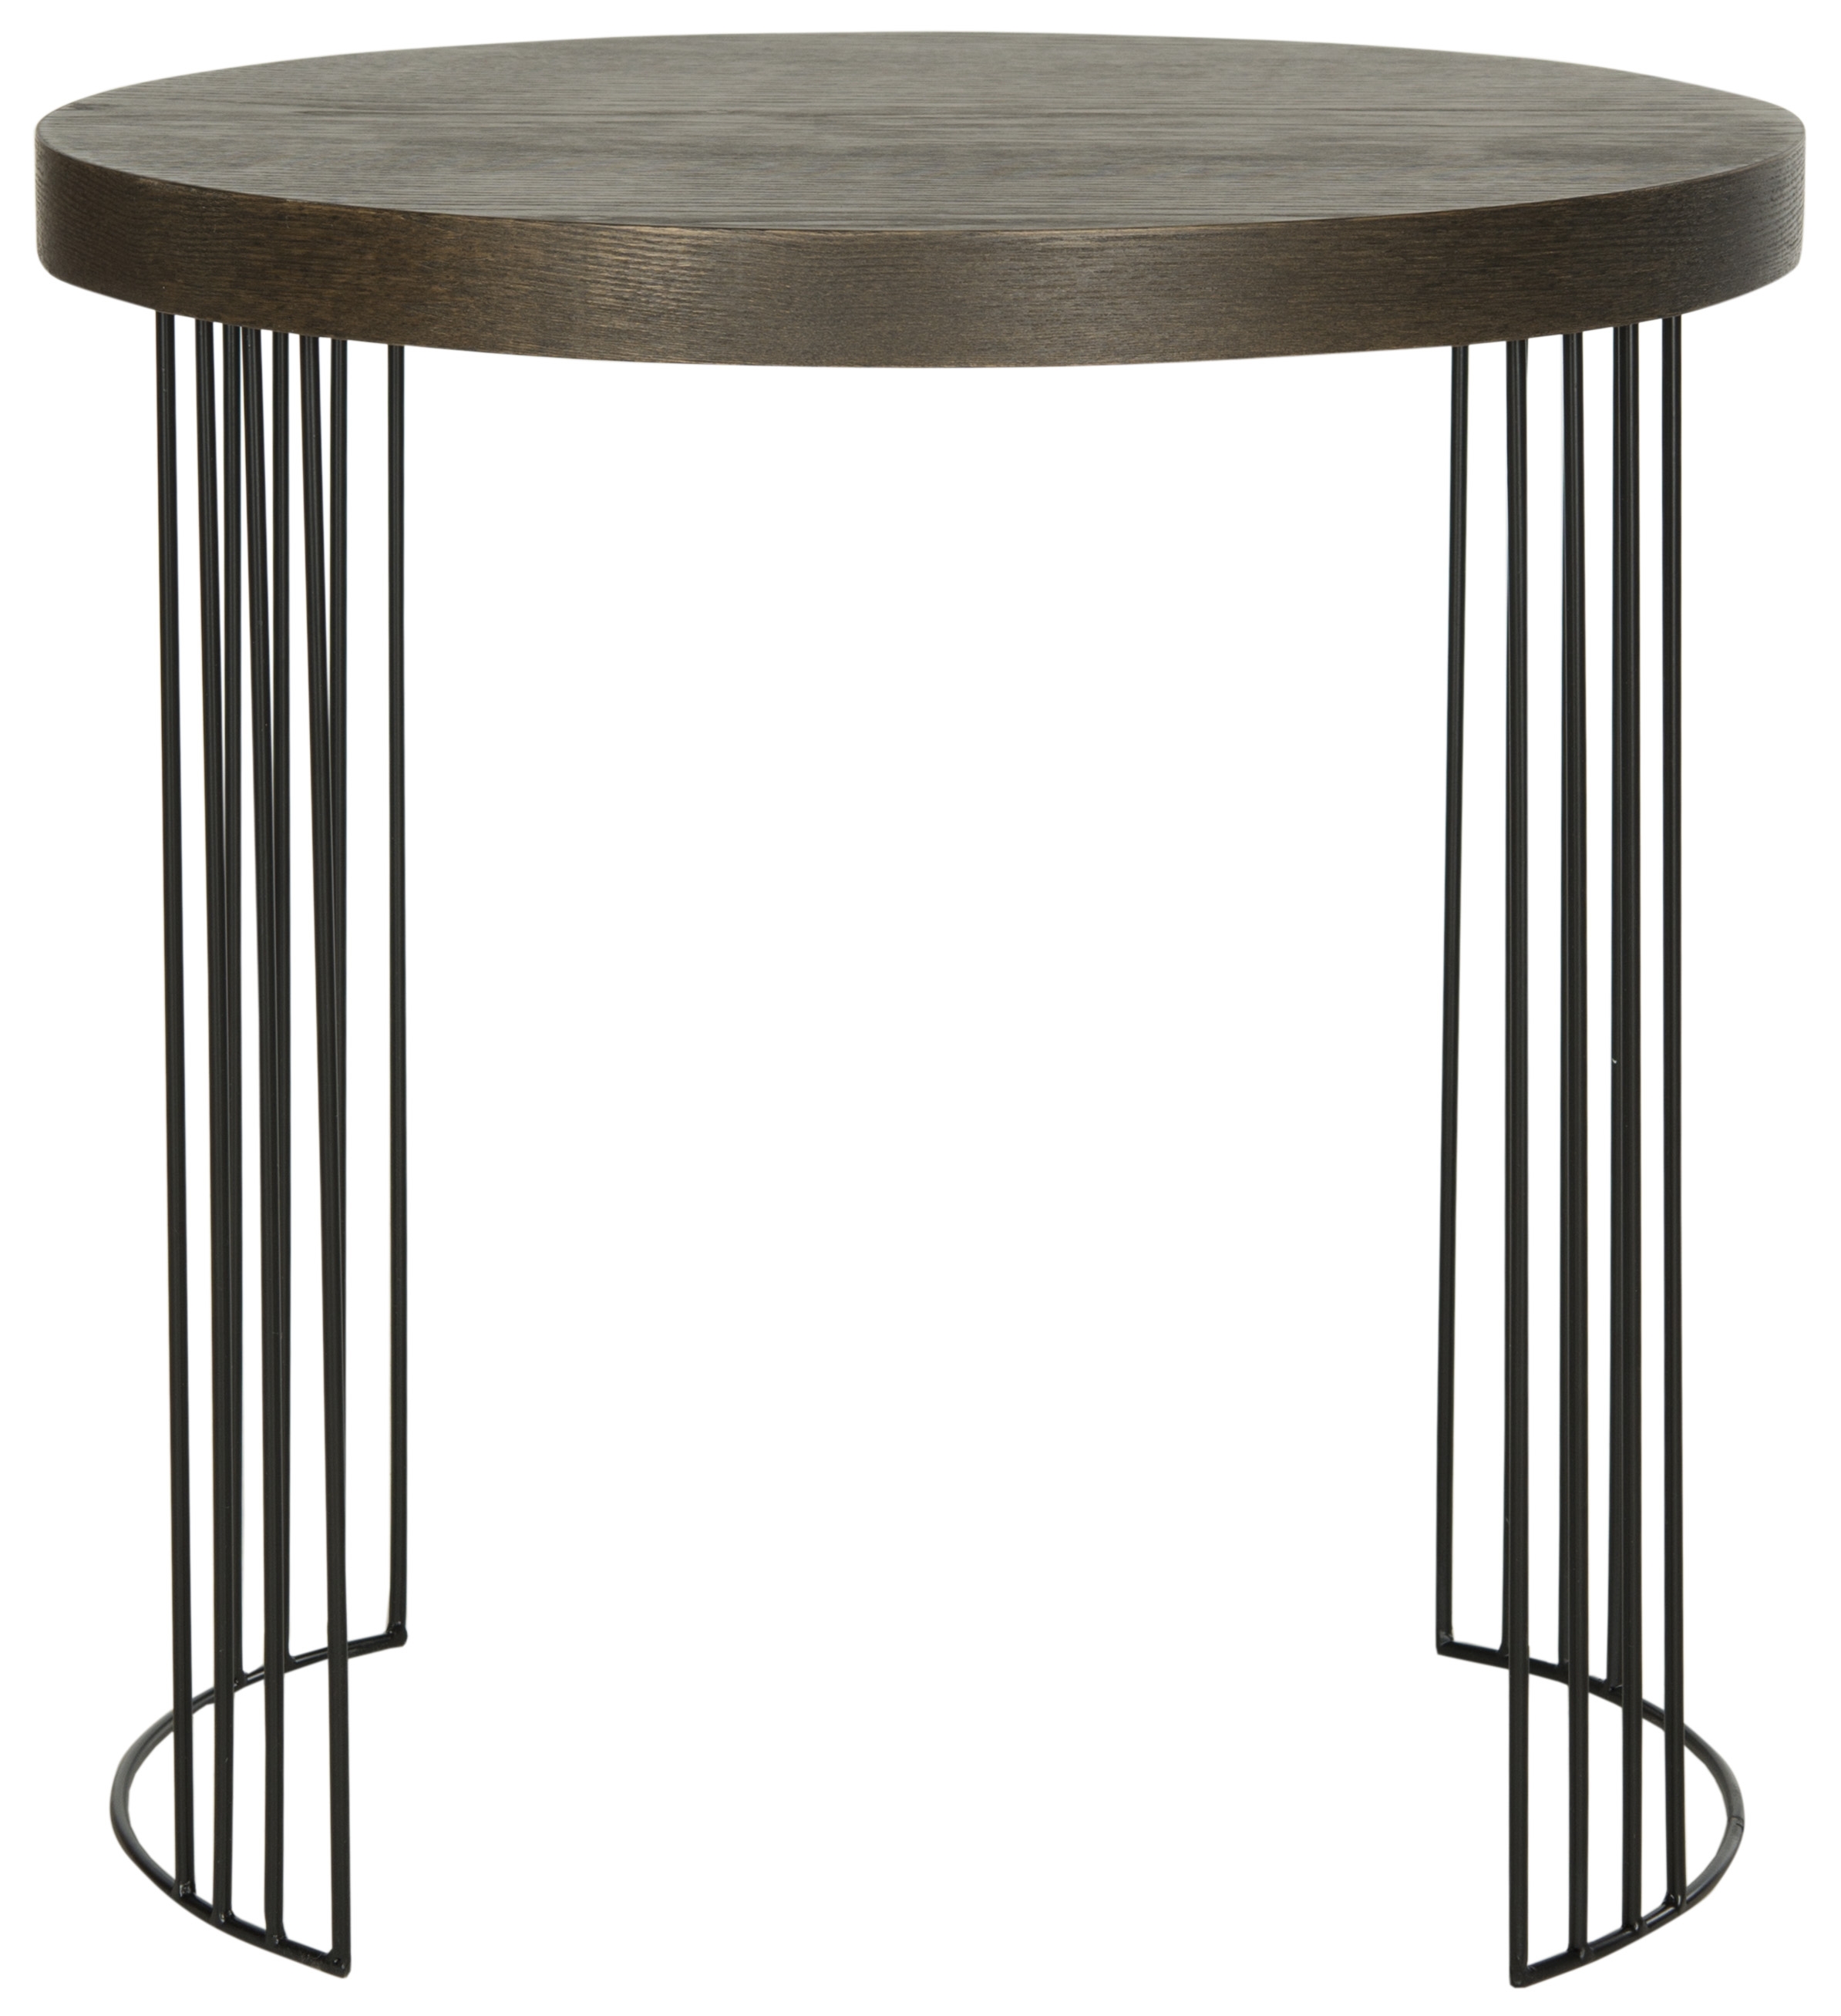 Kelly Mid Century Scandinavian Wood Side Table - Dark Brown/Black - Arlo Home - Image 0